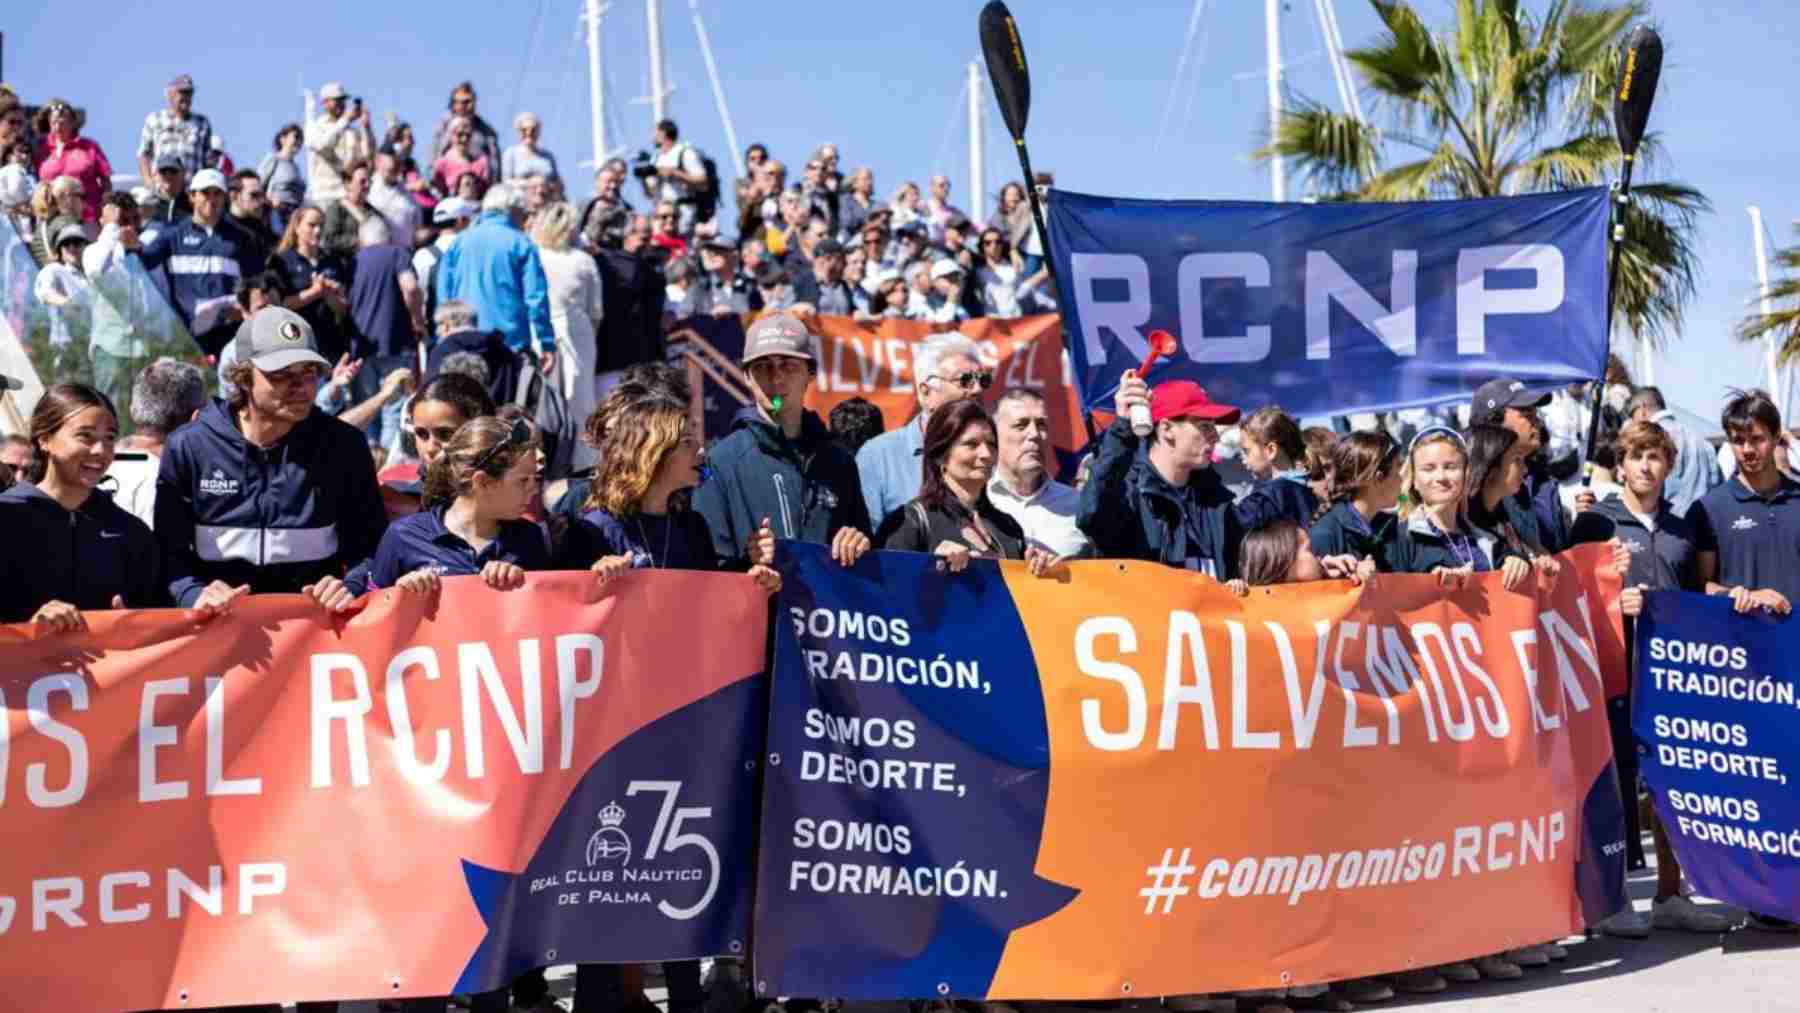 Manifestación a favor del Real Club Náutico de Palma.